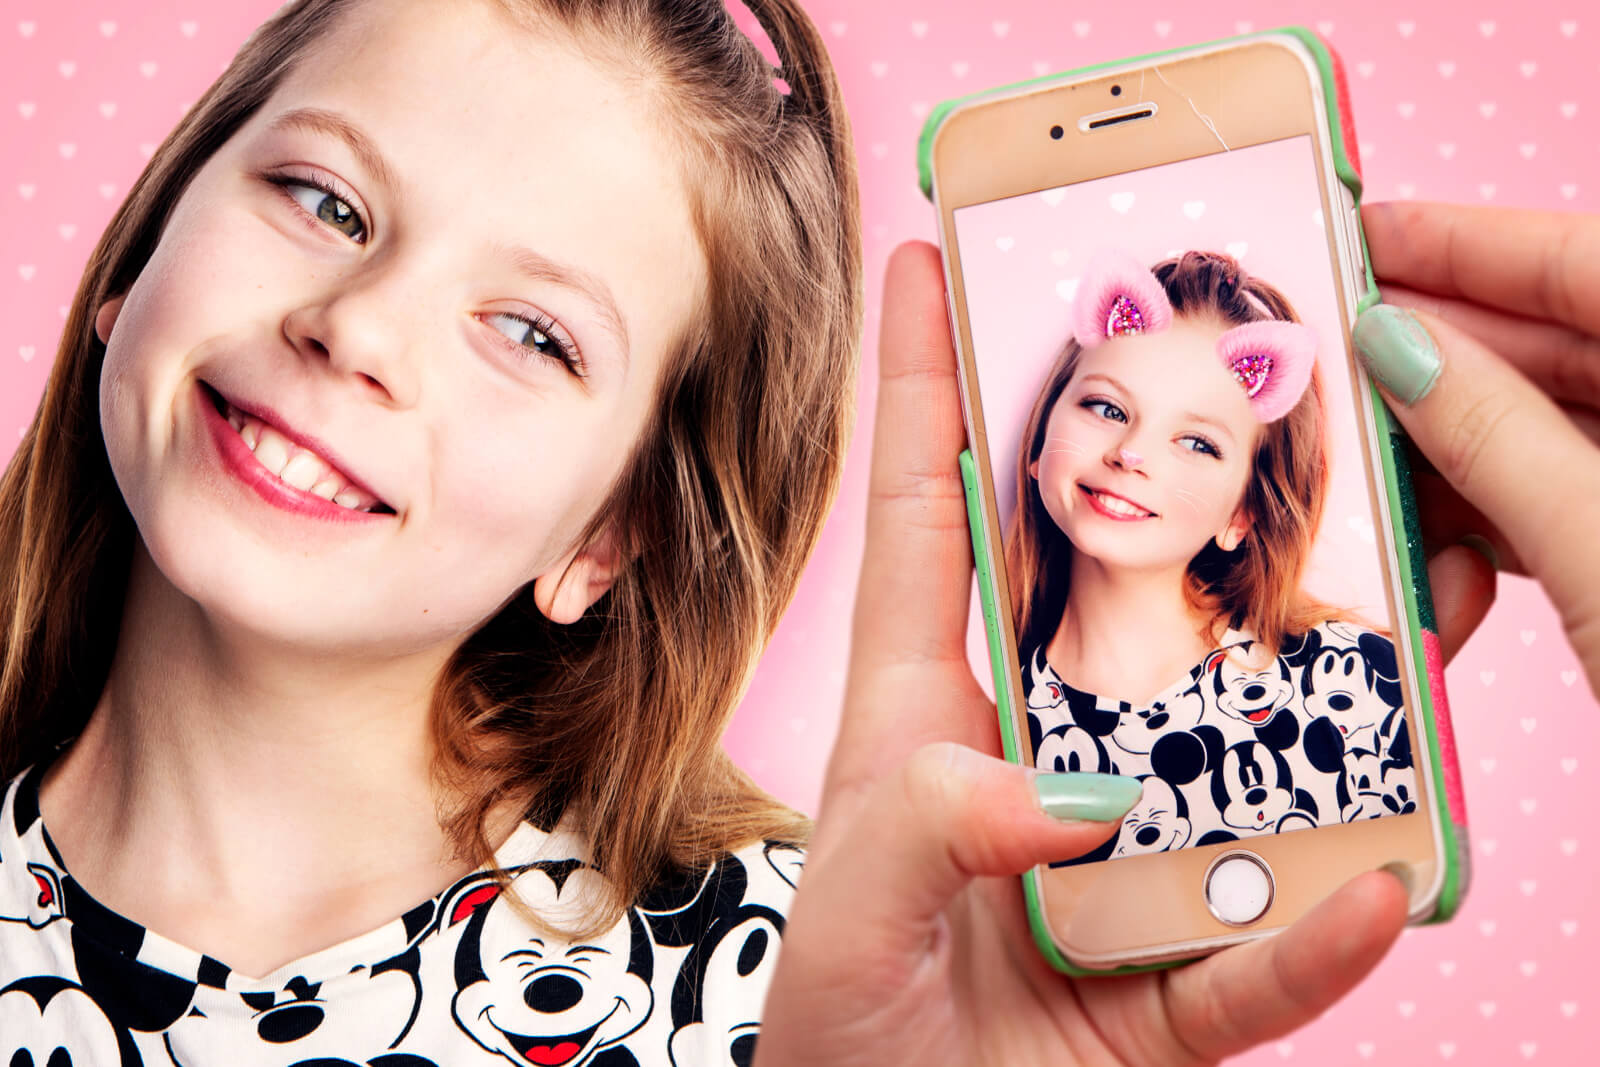 Jente som viser fram en selfie på mobil hvor hun har rosa ører